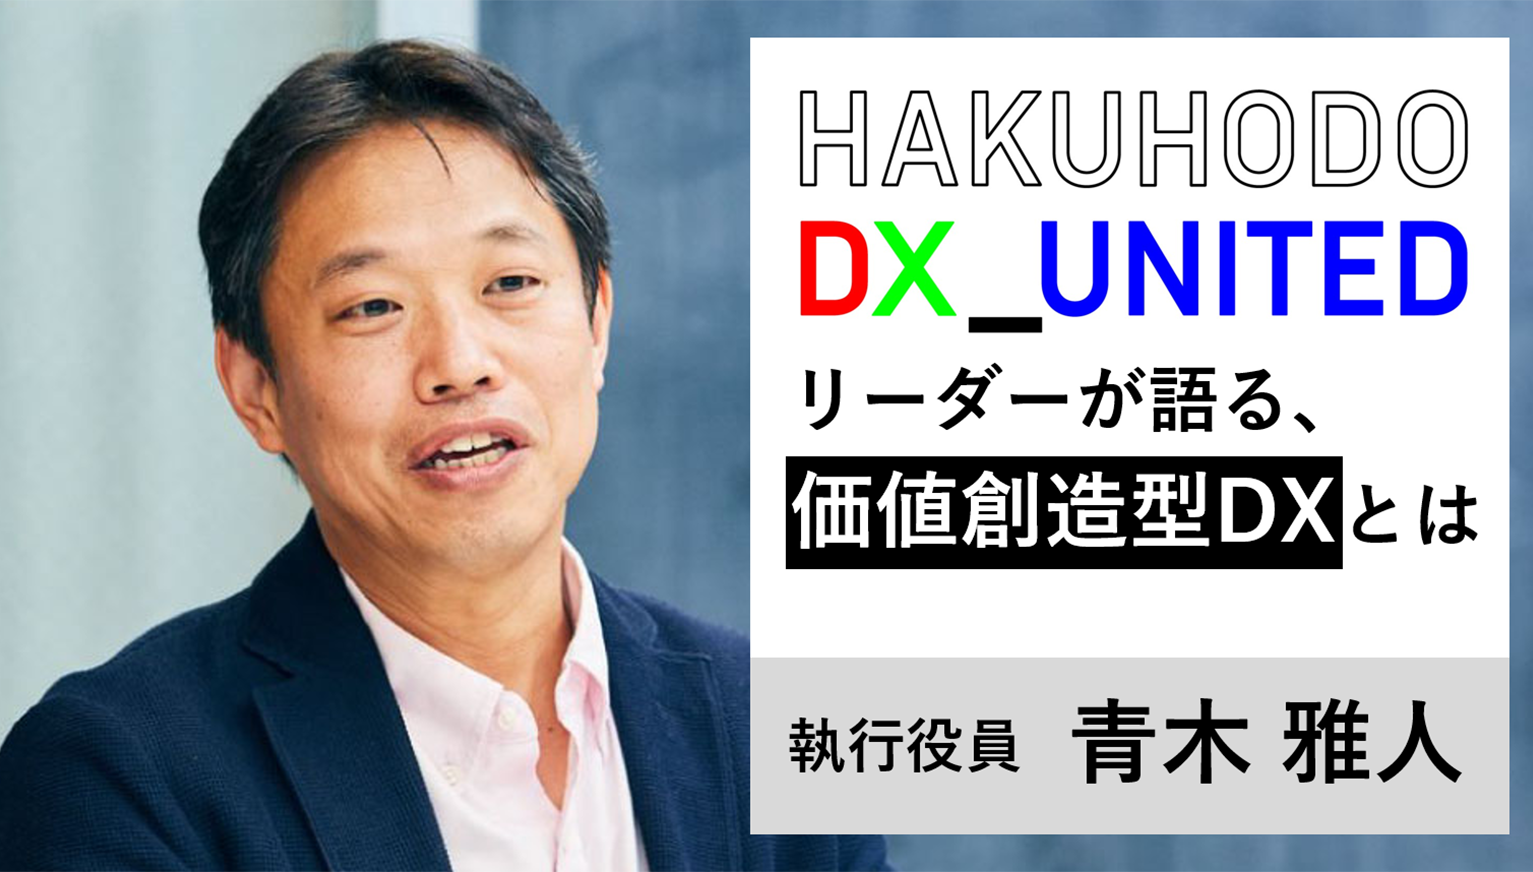 価値創造型のDXを推進する組織「HAKUHODO DX_UNITED」始動